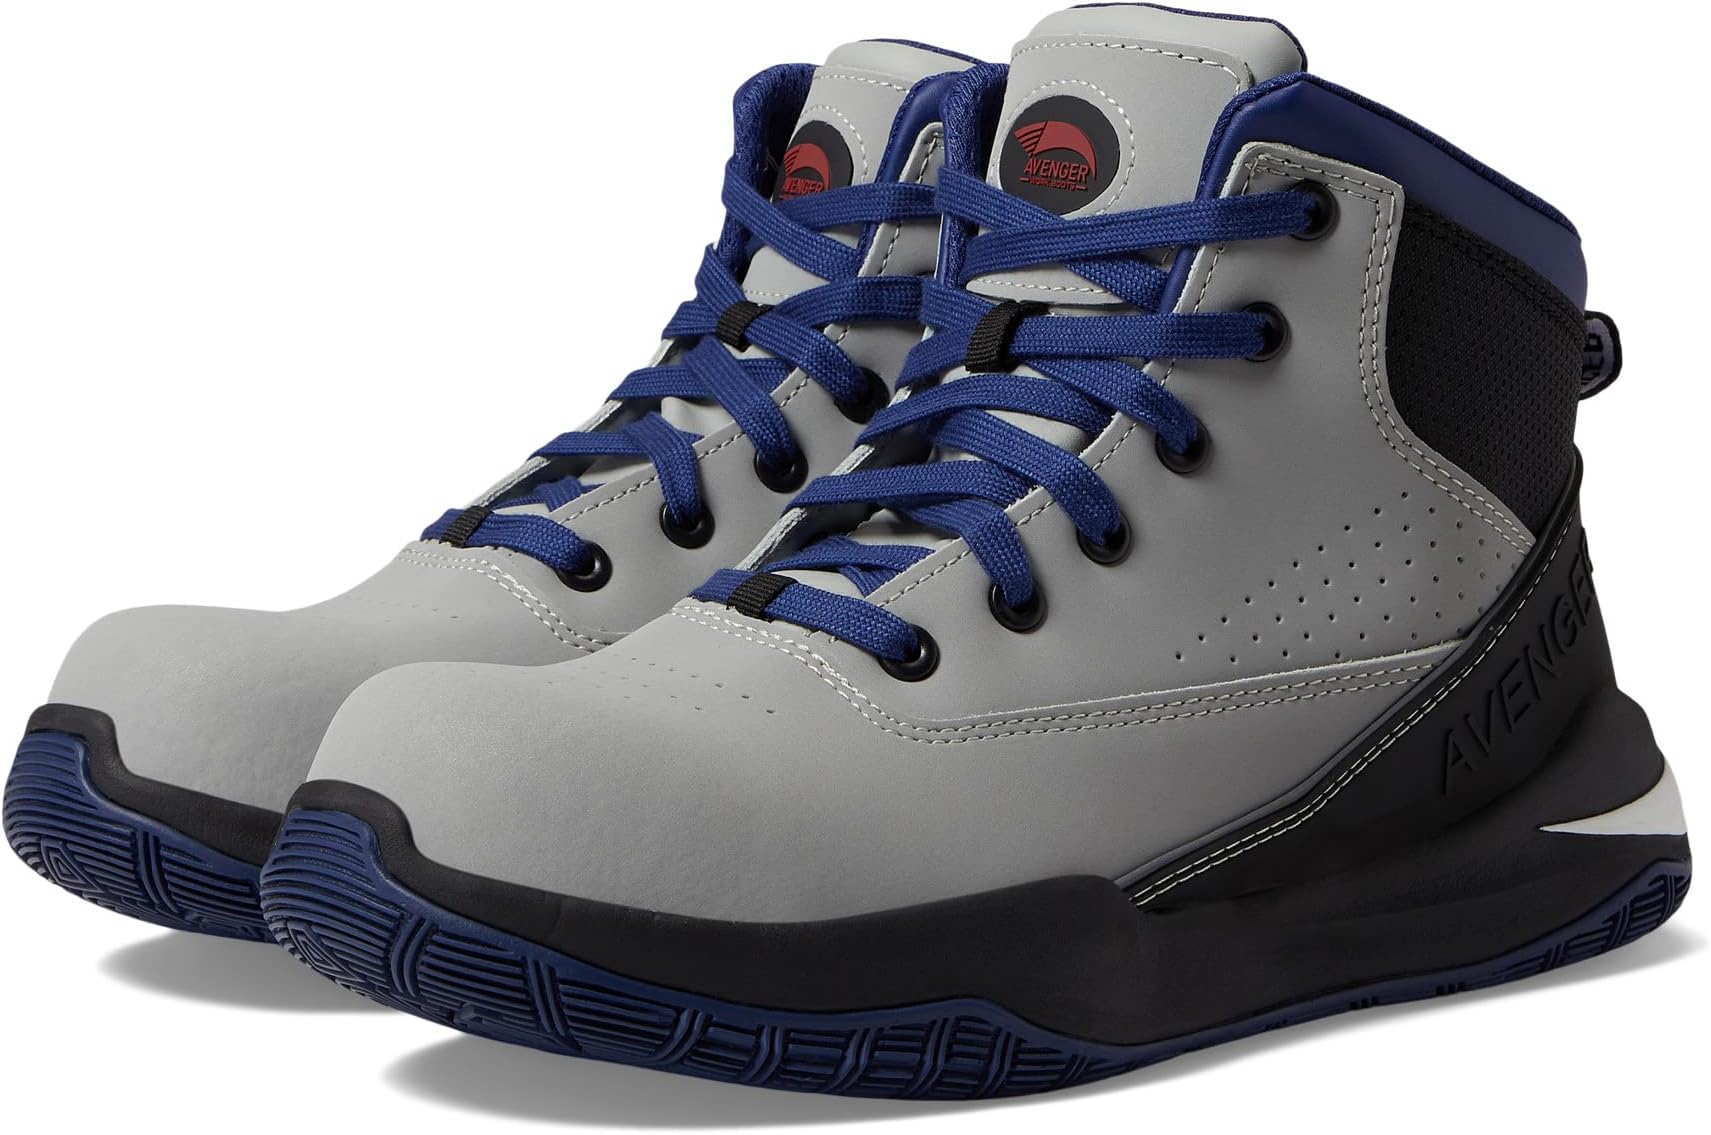 Рабочая обувь Reaction Mid Avenger Work Boots, цвет Grey/Blue рабочая обувь reflex avenger work boots цвет blue grey